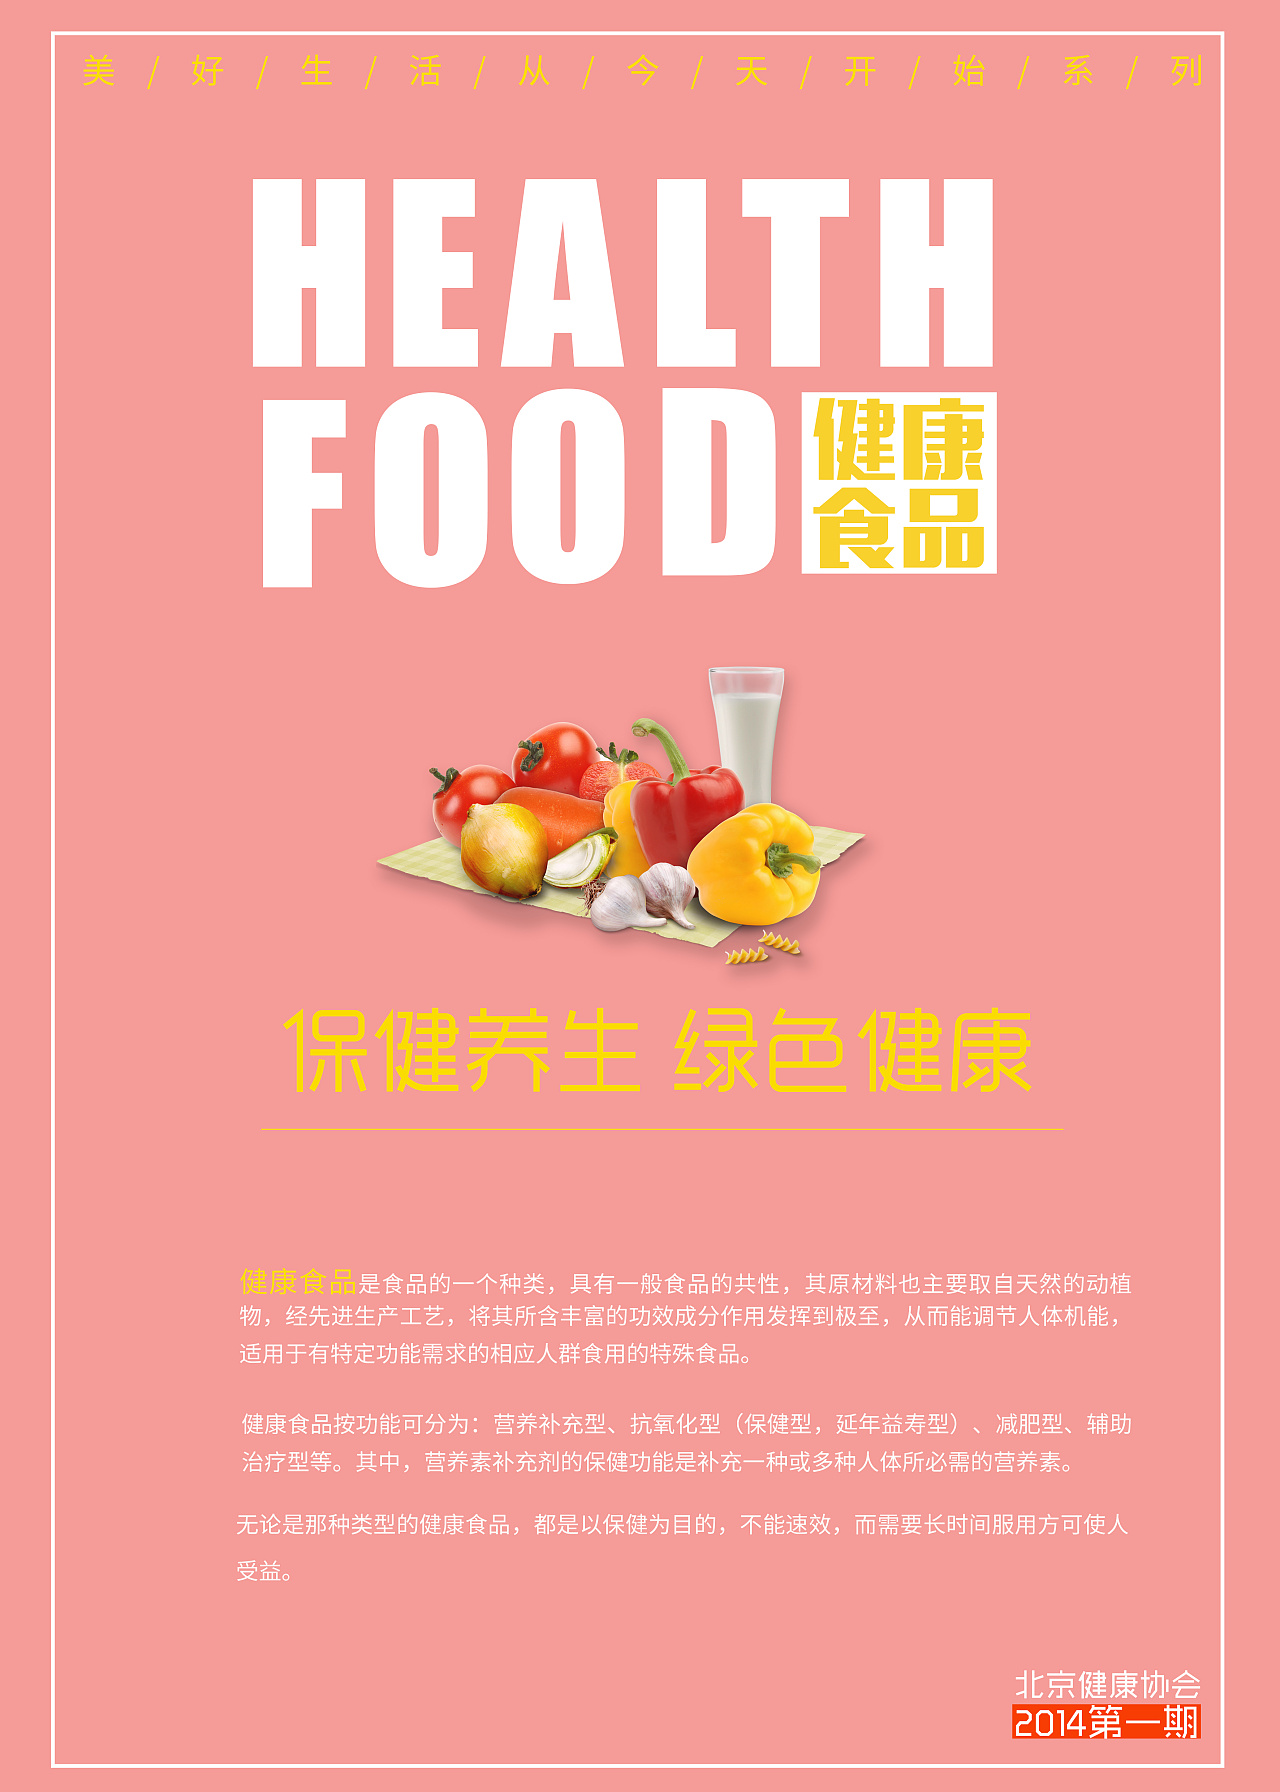 食品安全天然无公害安全营养蔬菜促销宣传海报图片下载 - 觅知网